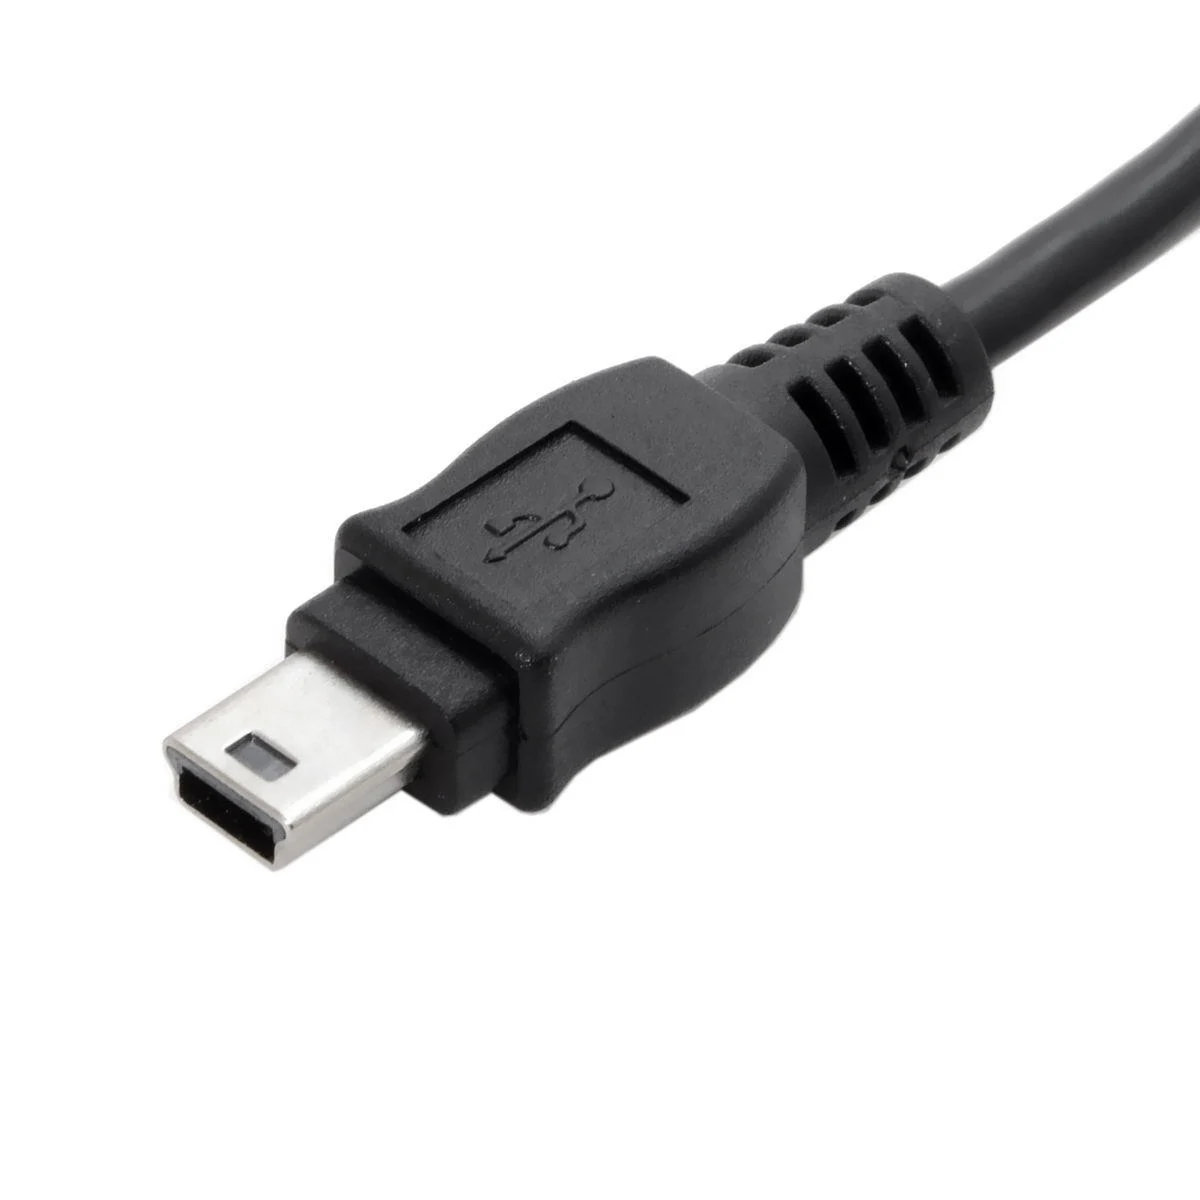 10 подходит для sony PS3 USB кабель Контроллер зарядный шнур для Playstation 3 беспроводной DualShock SIXAXIS CECHZC2U джойстик Дата